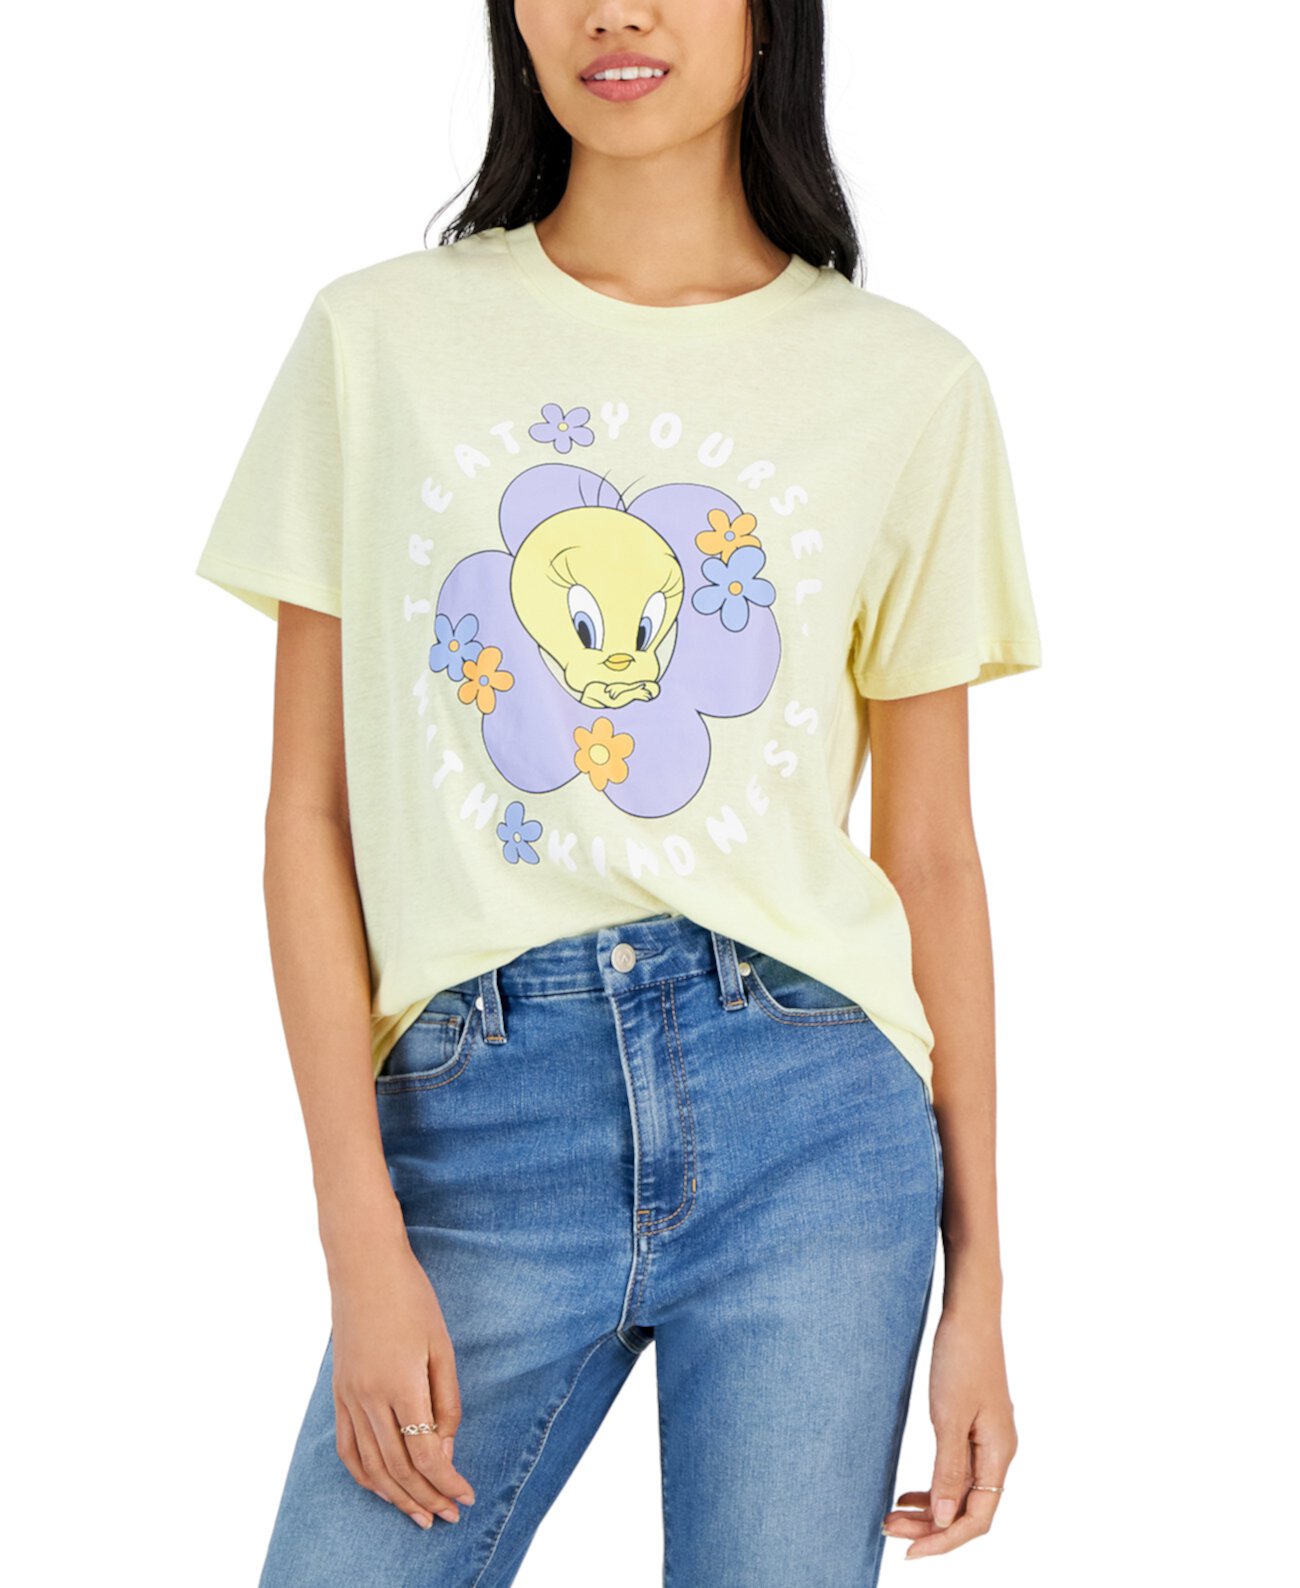 Детская футболка Tweety Bird Treat Yourself с графическим принтом Love Tribe